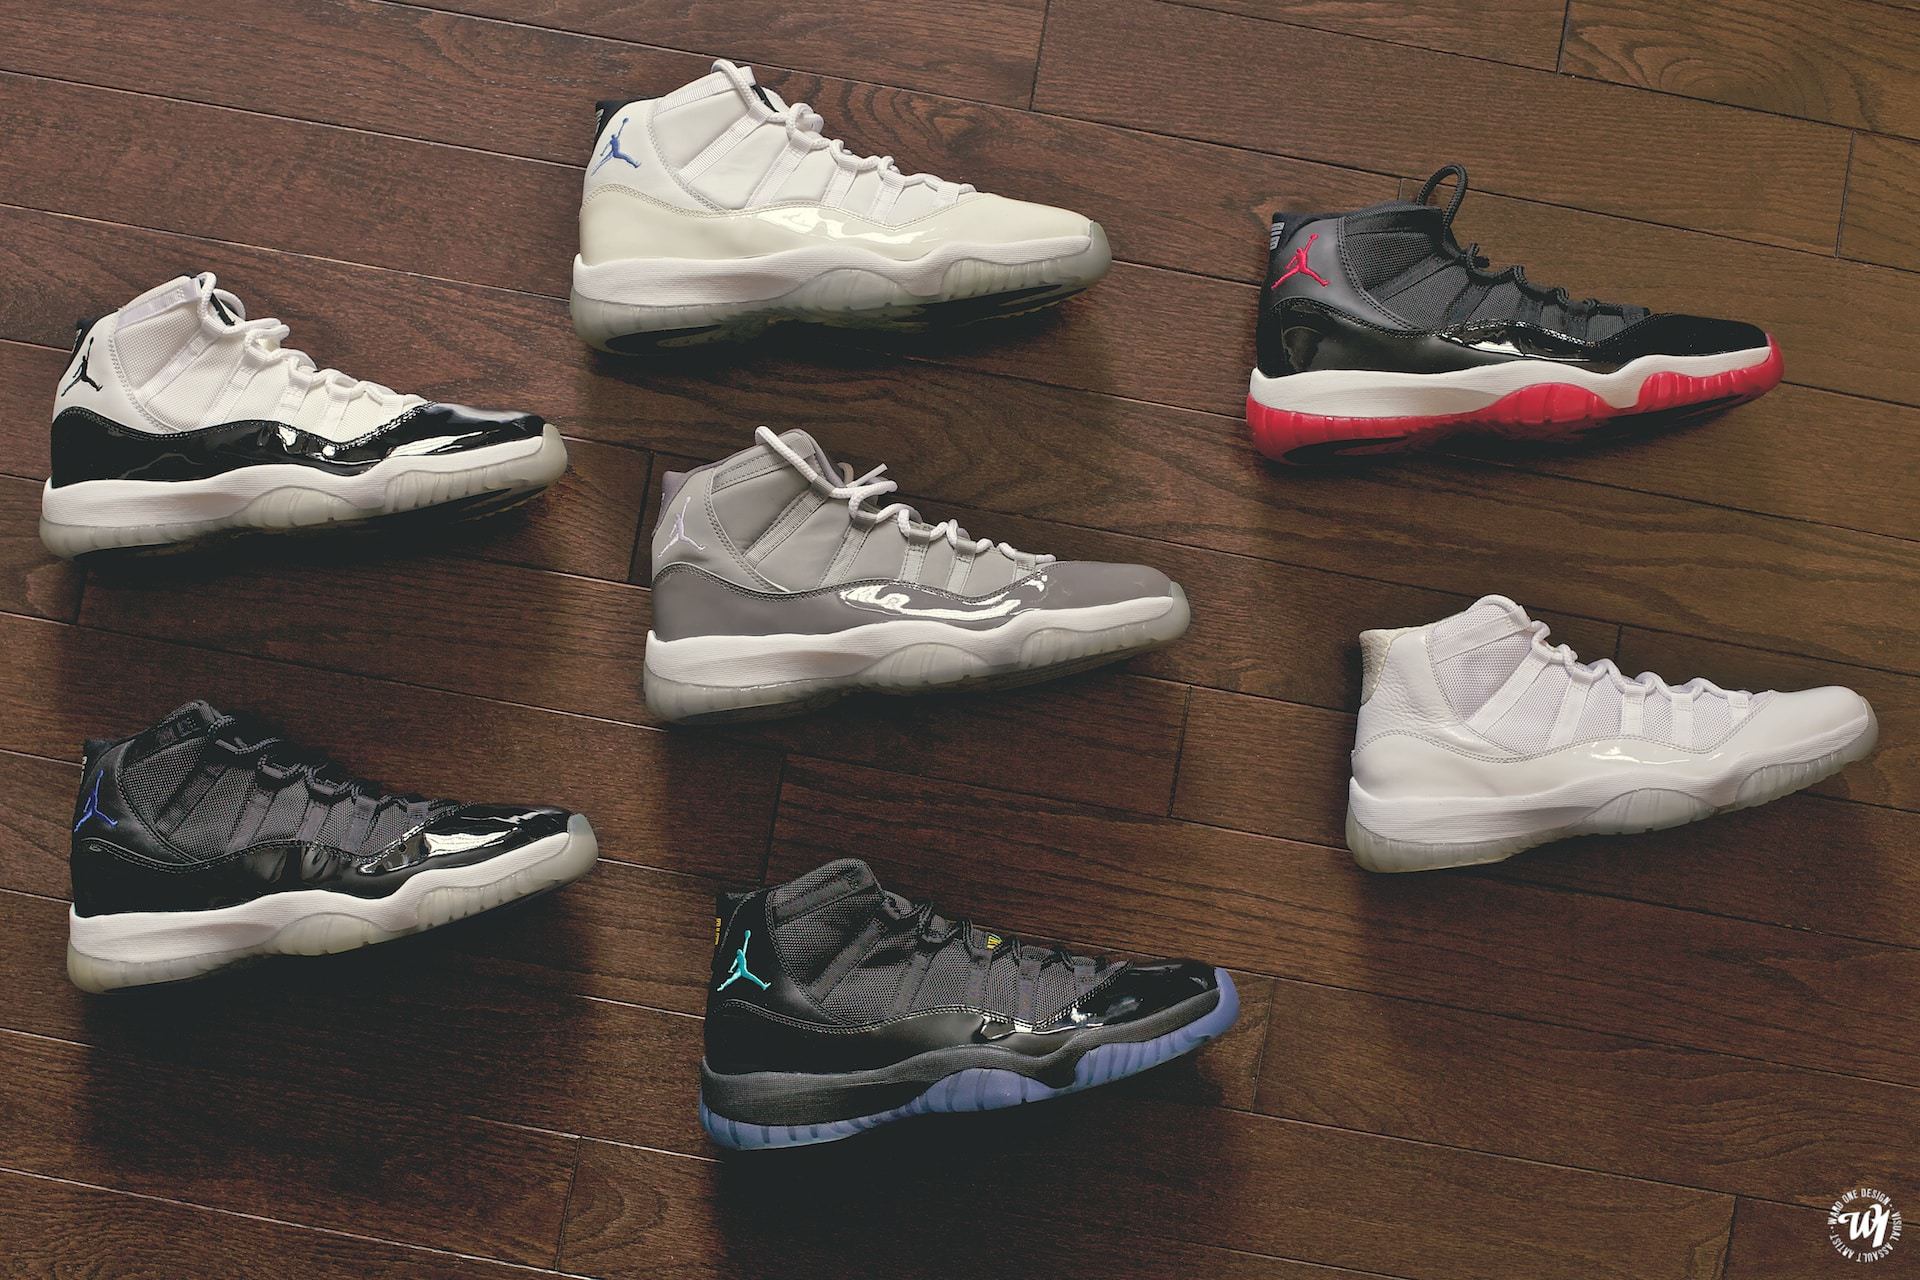 Air Jordan 11 Collection : Ward 1 Design